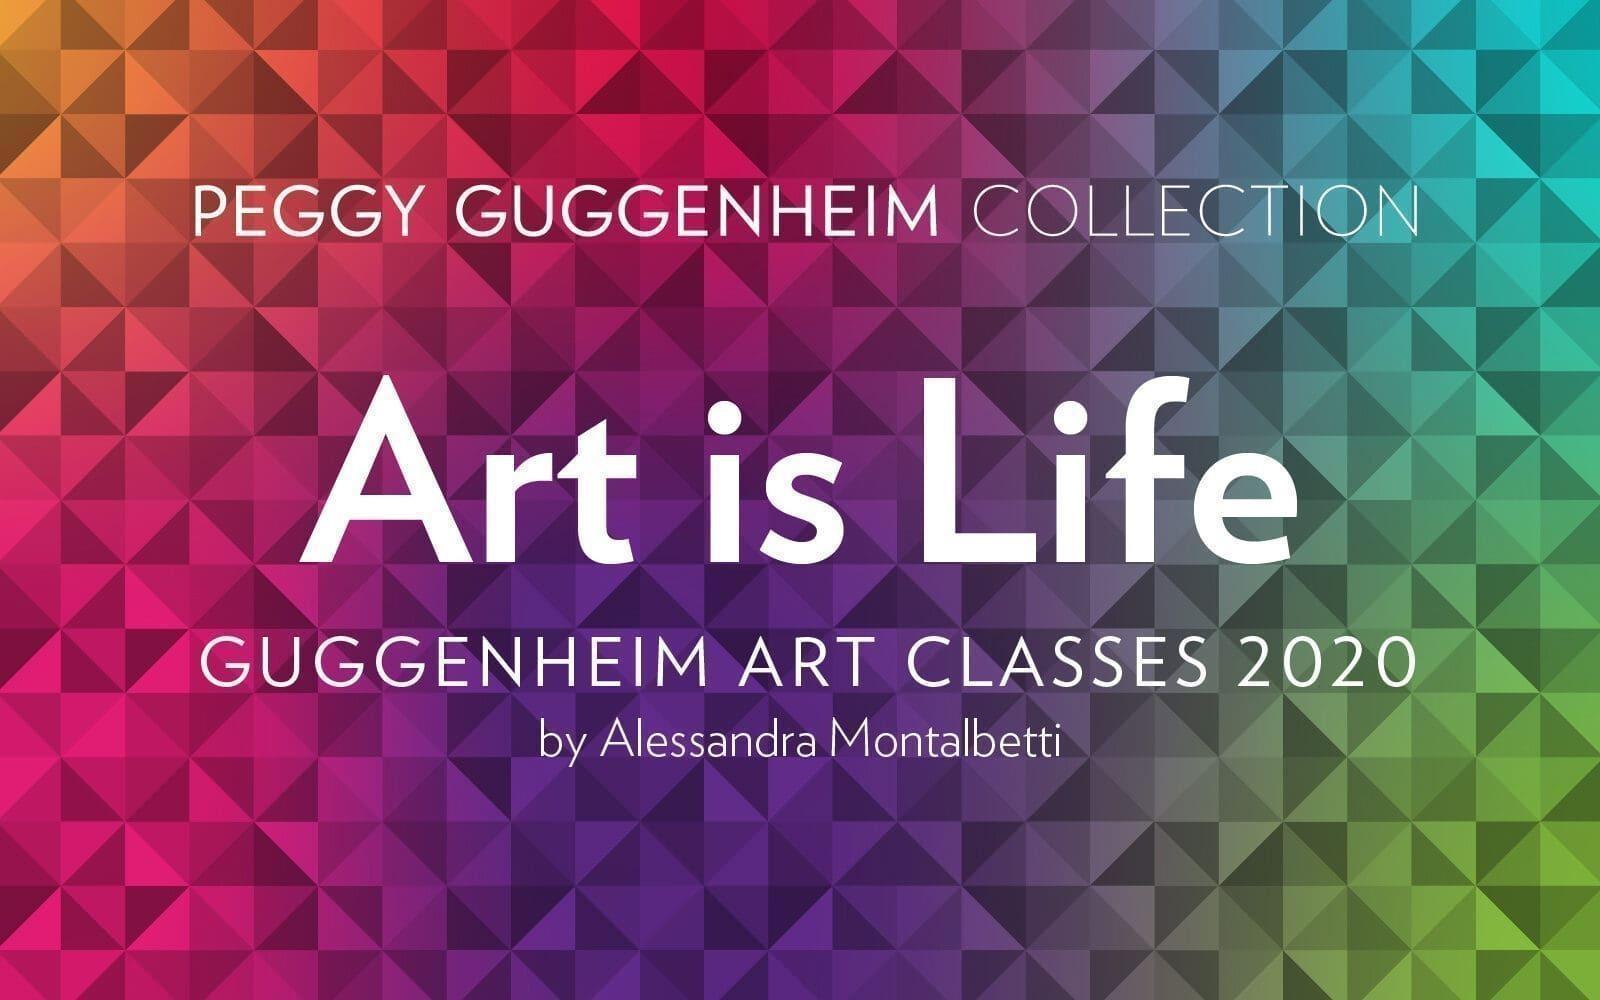 guggenheim art classes musec sole 240re vivi la tua passione per arte cultura master corsi online febbraio